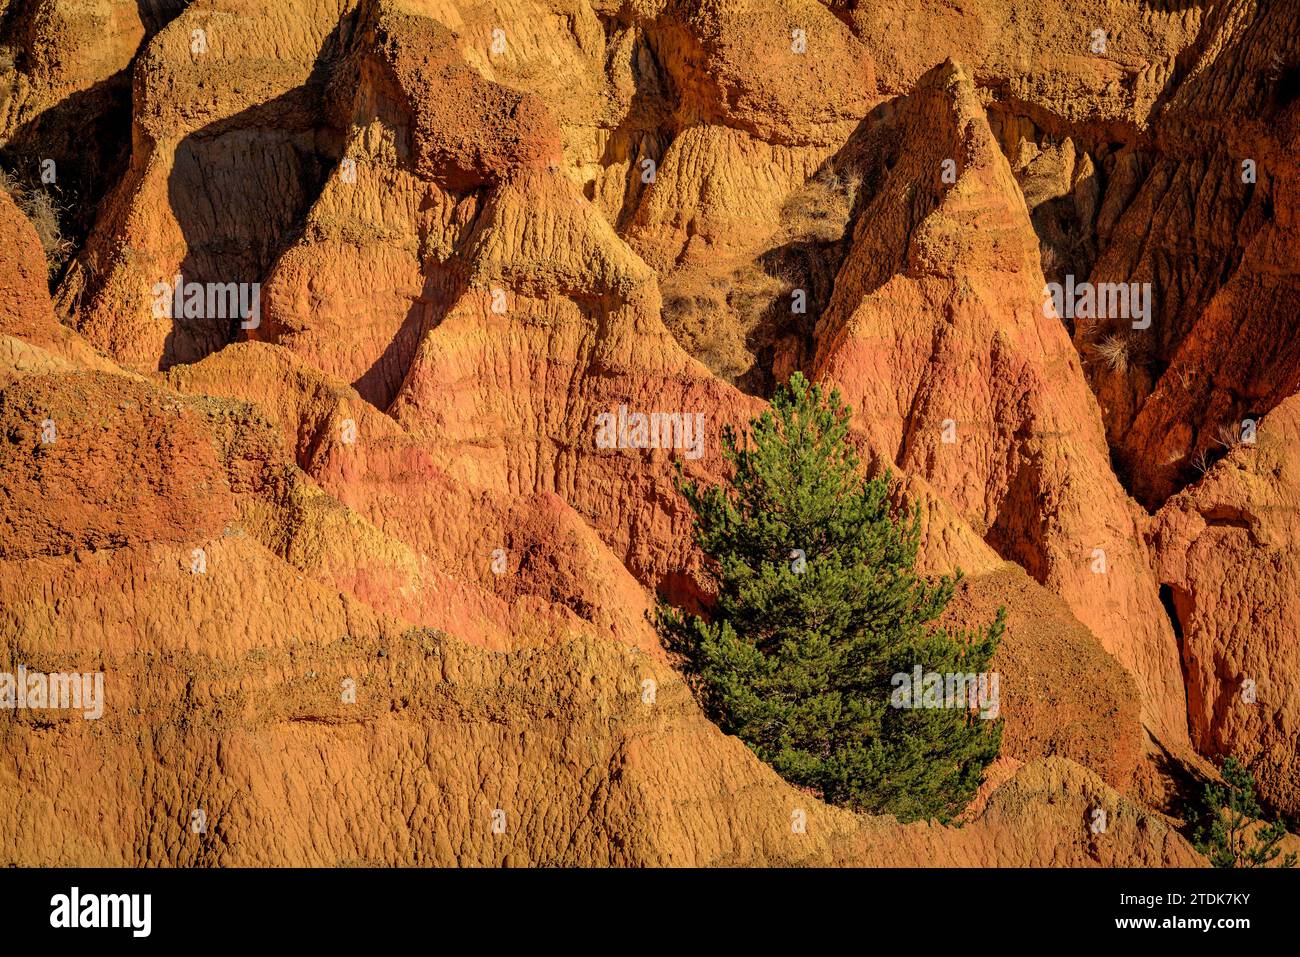 Esterregalls d'all (calanchi), una formazione geologica causata dall'erosione nei pressi di tutti i villaggi (Cerdanya, Catalogna, Spagna, Pirenei) Foto Stock